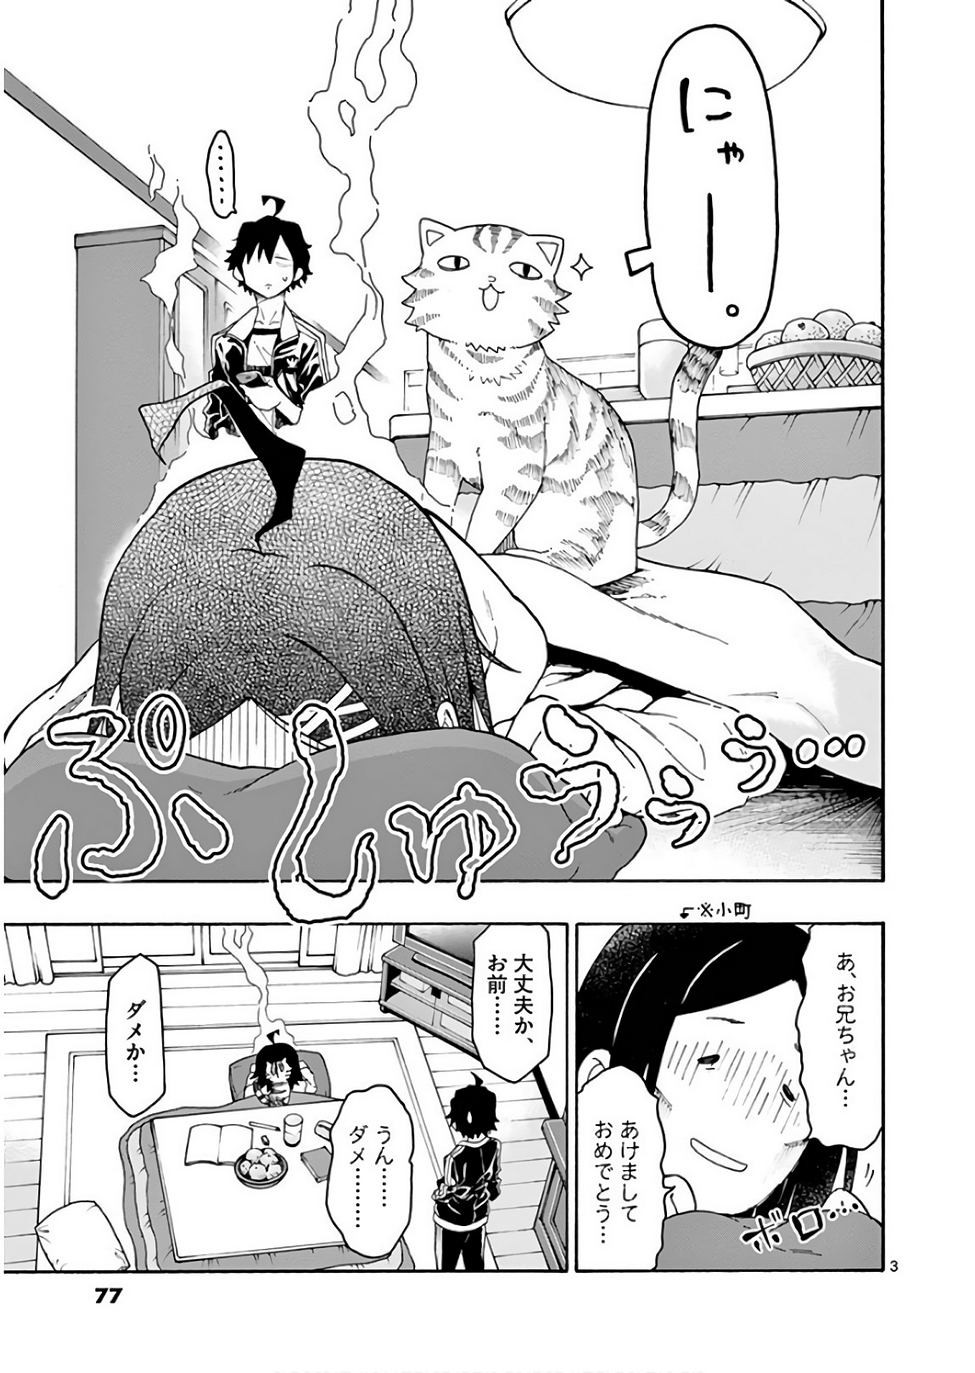 Yahari Ore no Seishun Rabukome wa Machigatte Iru. @ Comic - Chapter 73 - Page 3